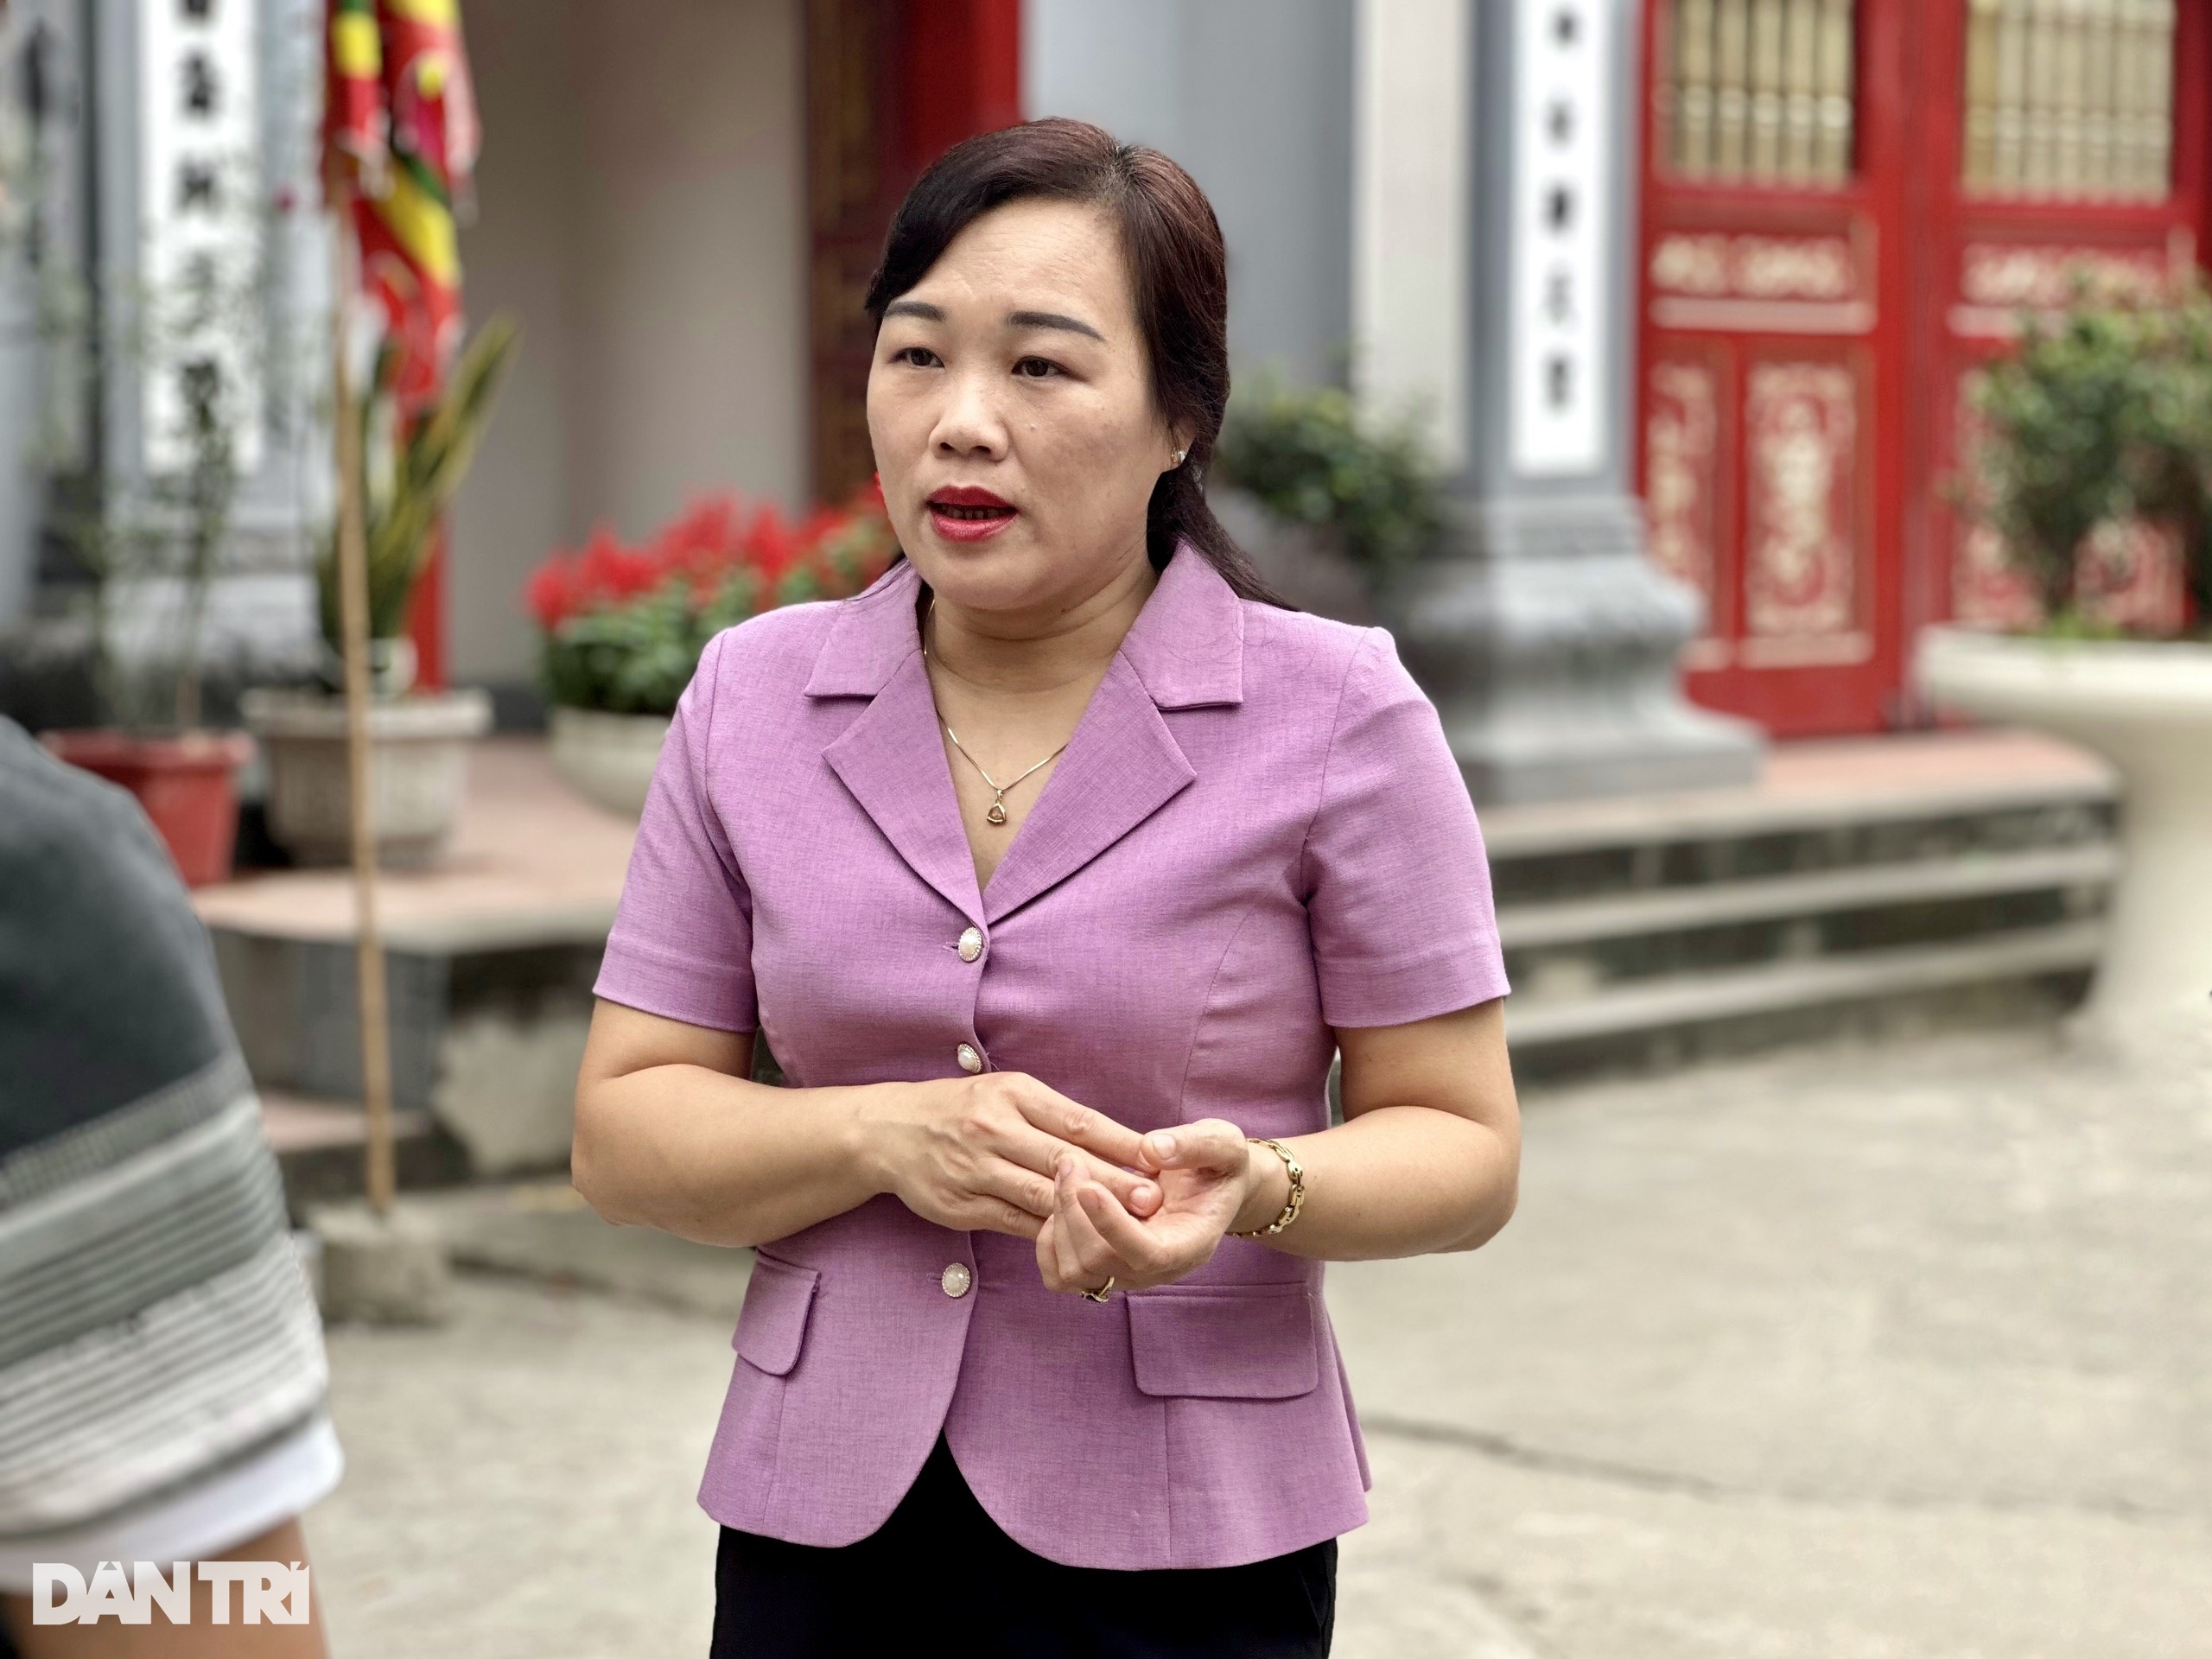 Bà Vũ Thị Hoài Phương, Phó Giám đốc Sở Văn hóa, Thể thao và Du lịch tỉnh Phú Thọ (Ảnh: Thanh Thúy).